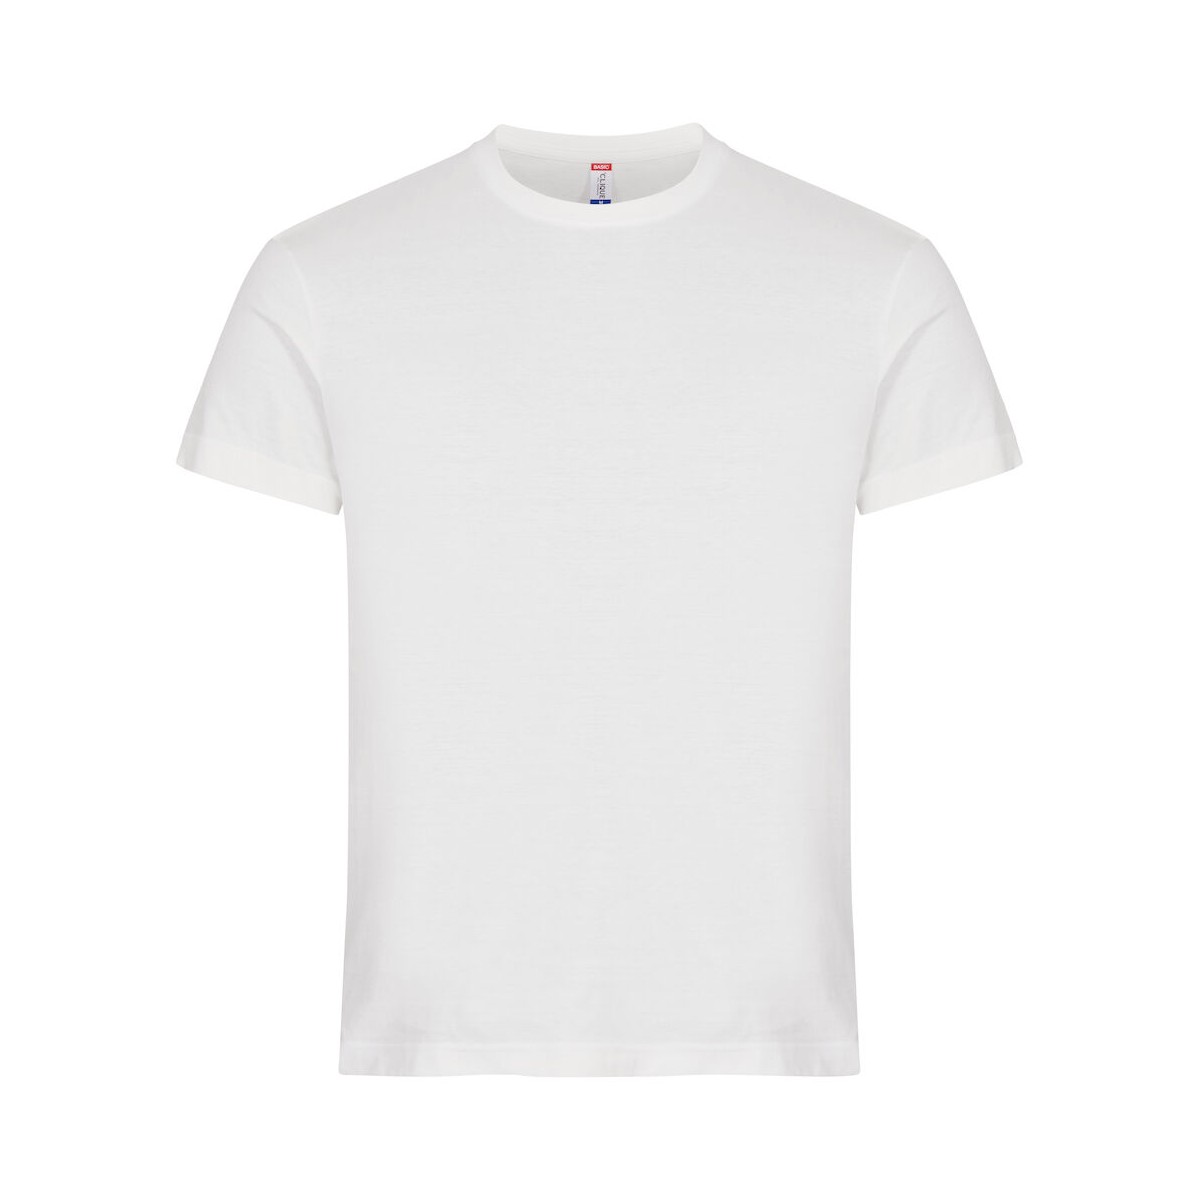 T-shirt 100% coton - CLIQUE - Coupe homme - Couleur blanc cassé - Personnalisable en petite quantité